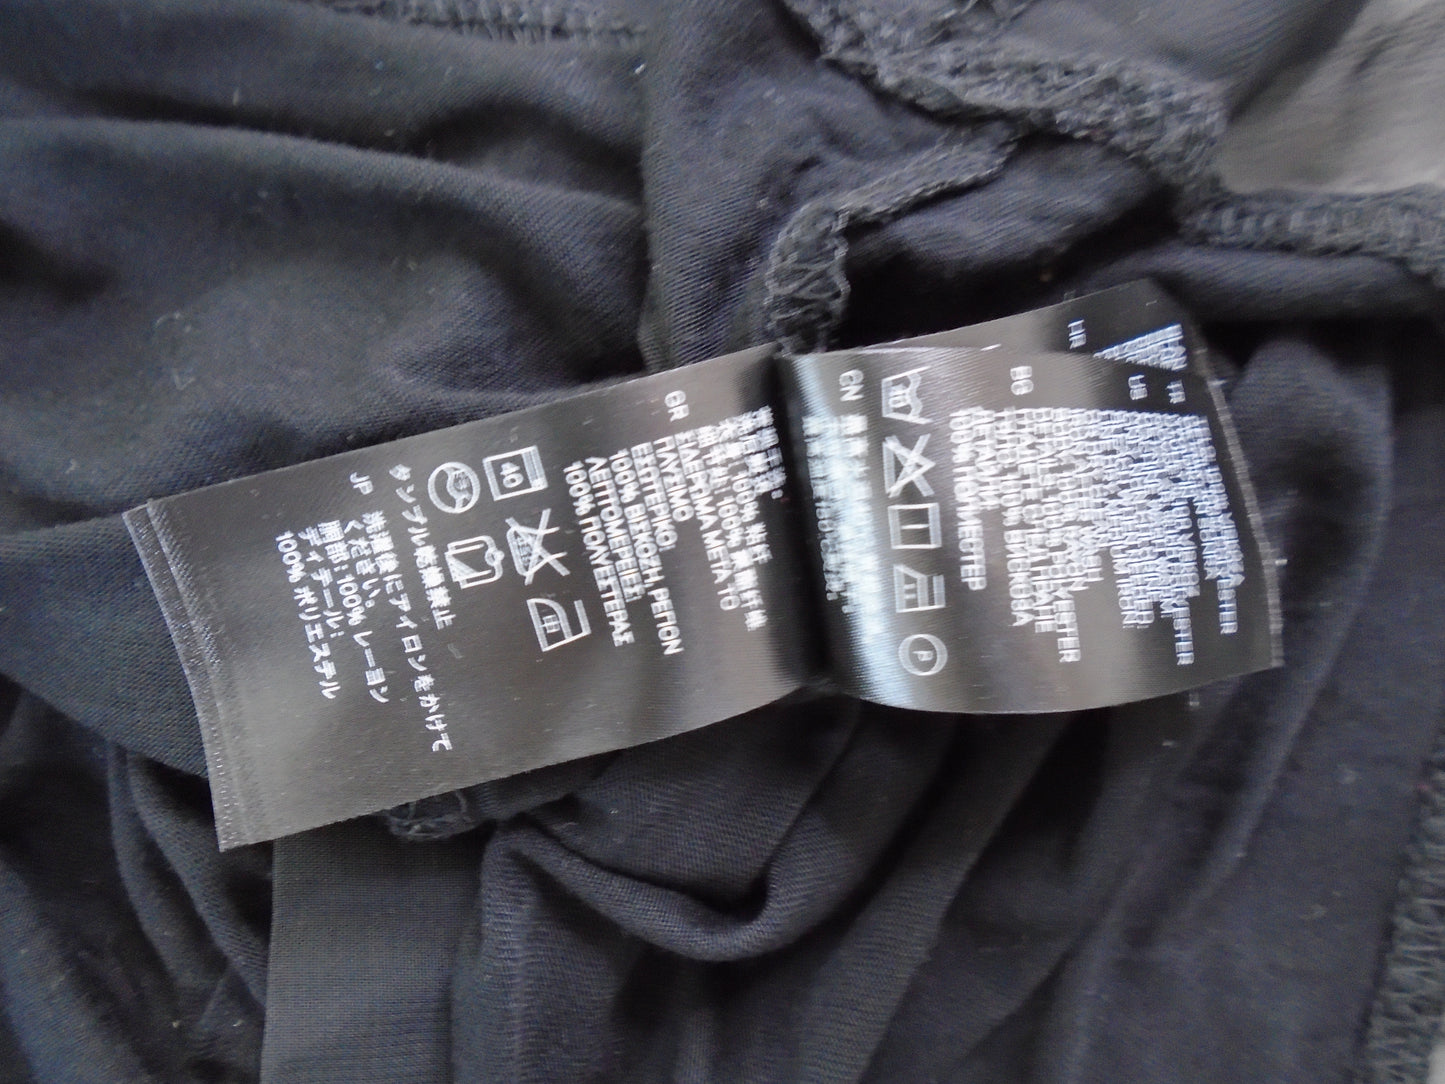 Camiseta interior de mujer H&M. De color negro. Talla: XS. Condición: Nuevo sin etiquetas. | 220201015